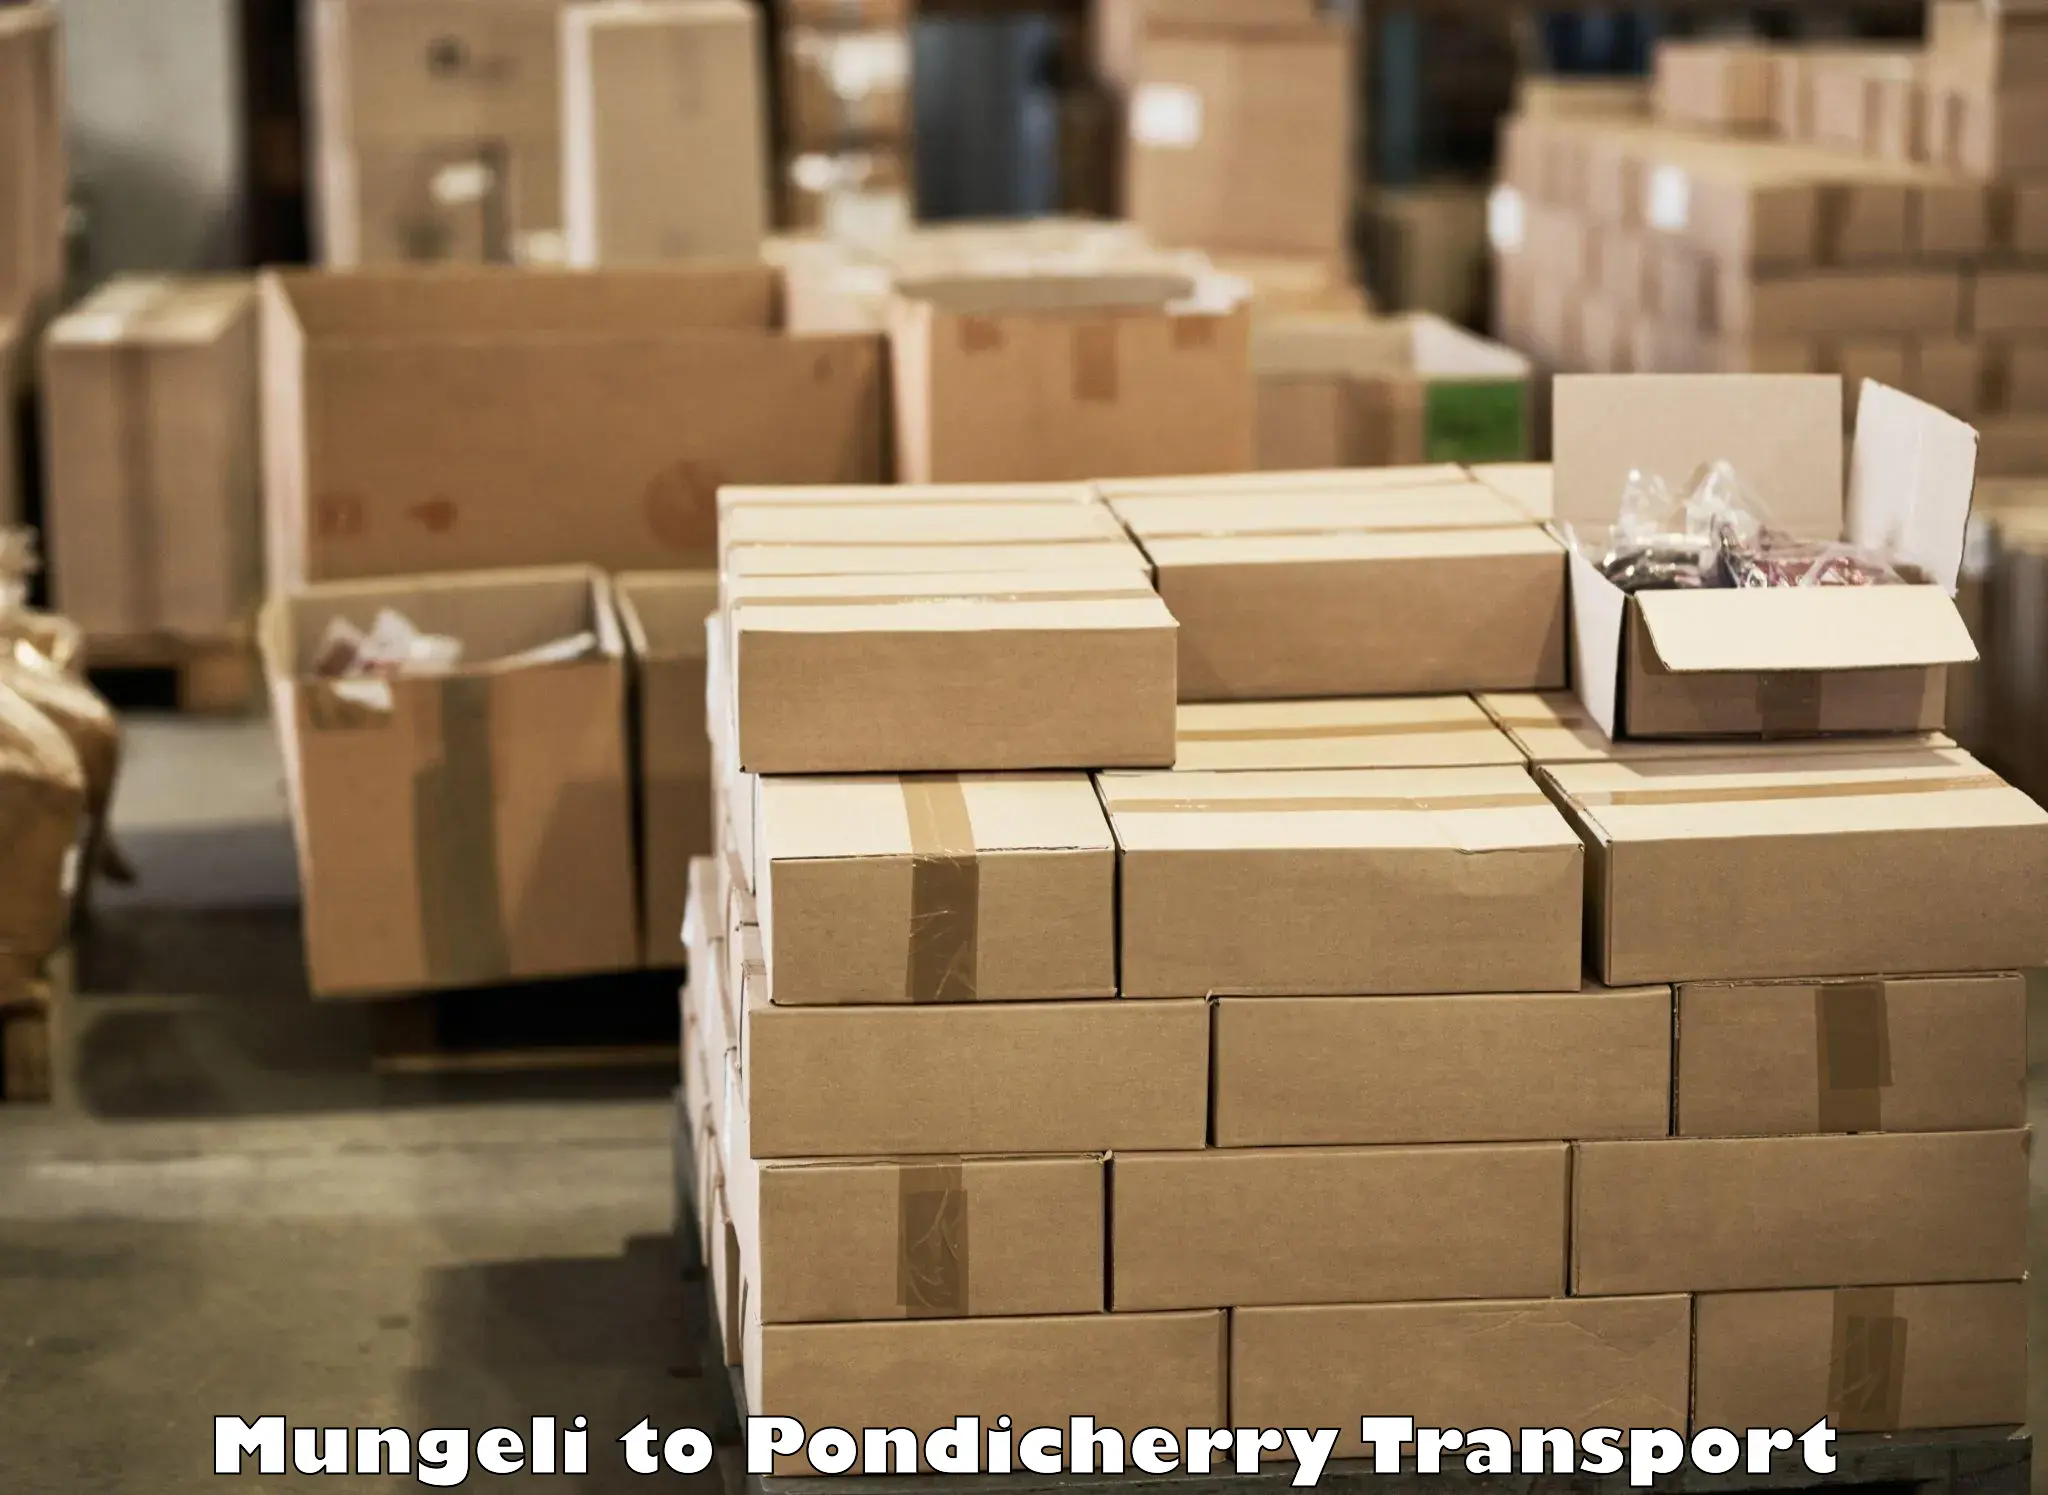 Two wheeler parcel service Mungeli to Pondicherry